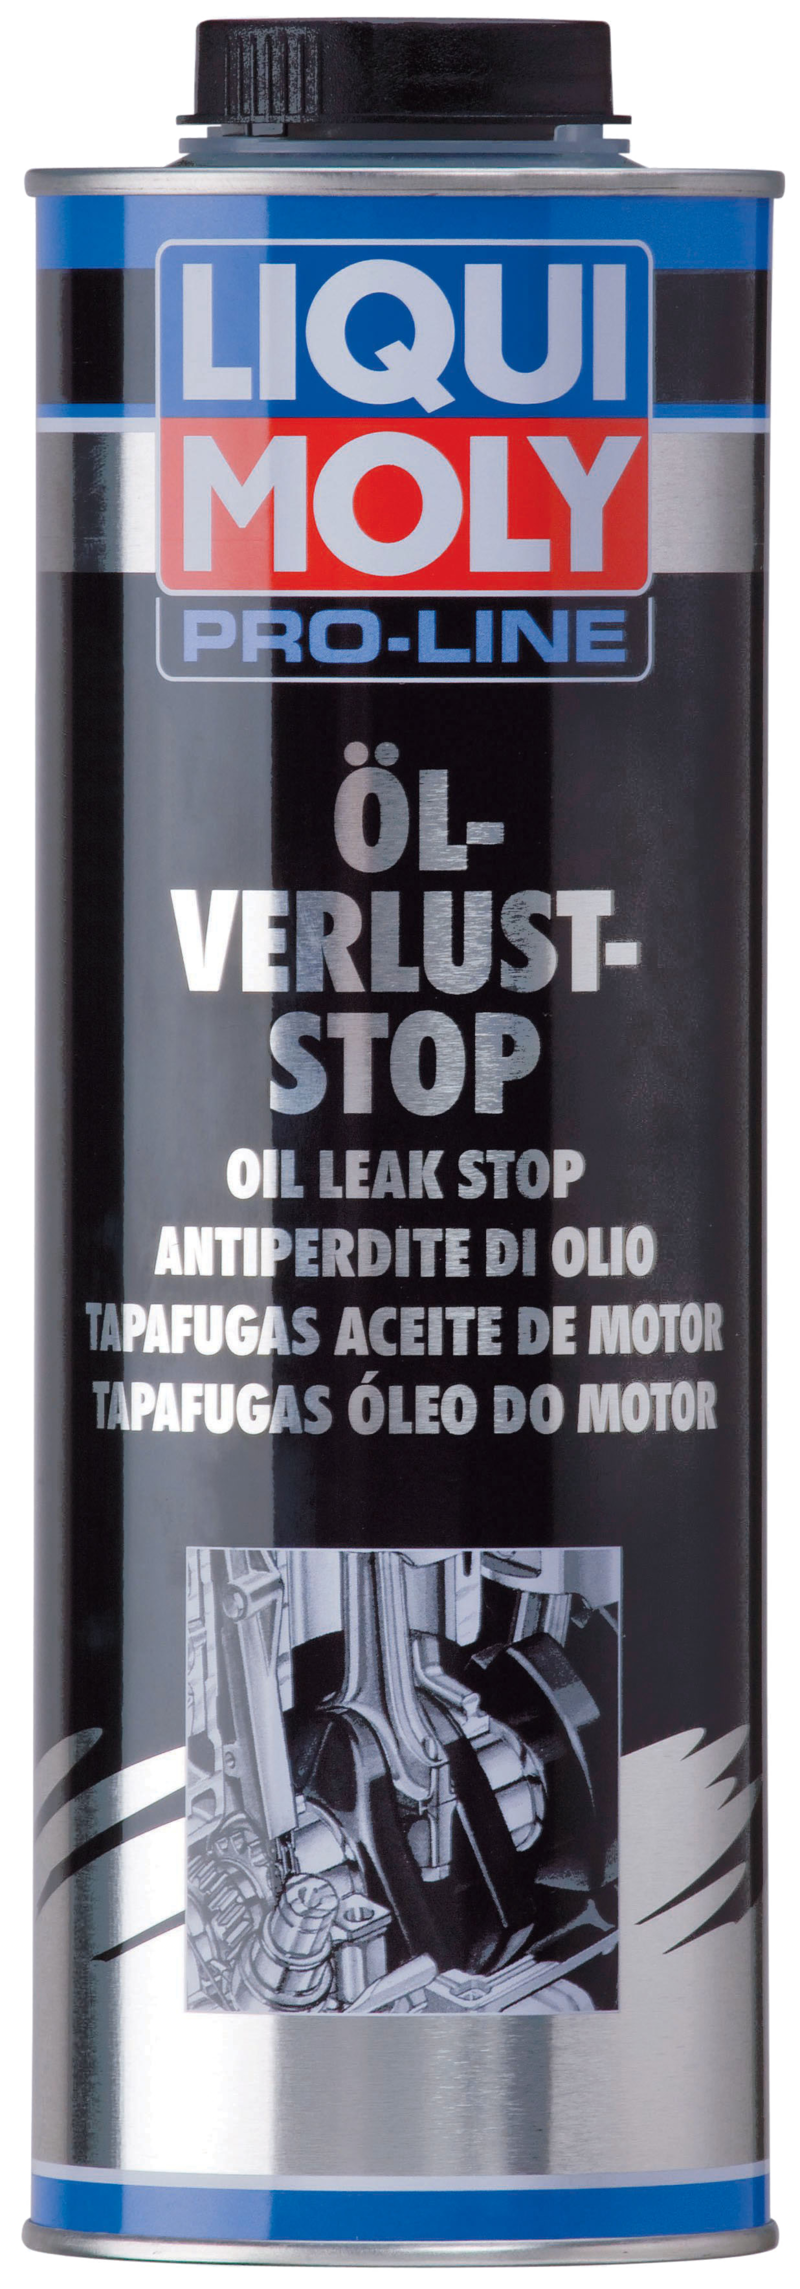 Pro-Line Tapafugas aceite de motor (1 L) Liqui Moly